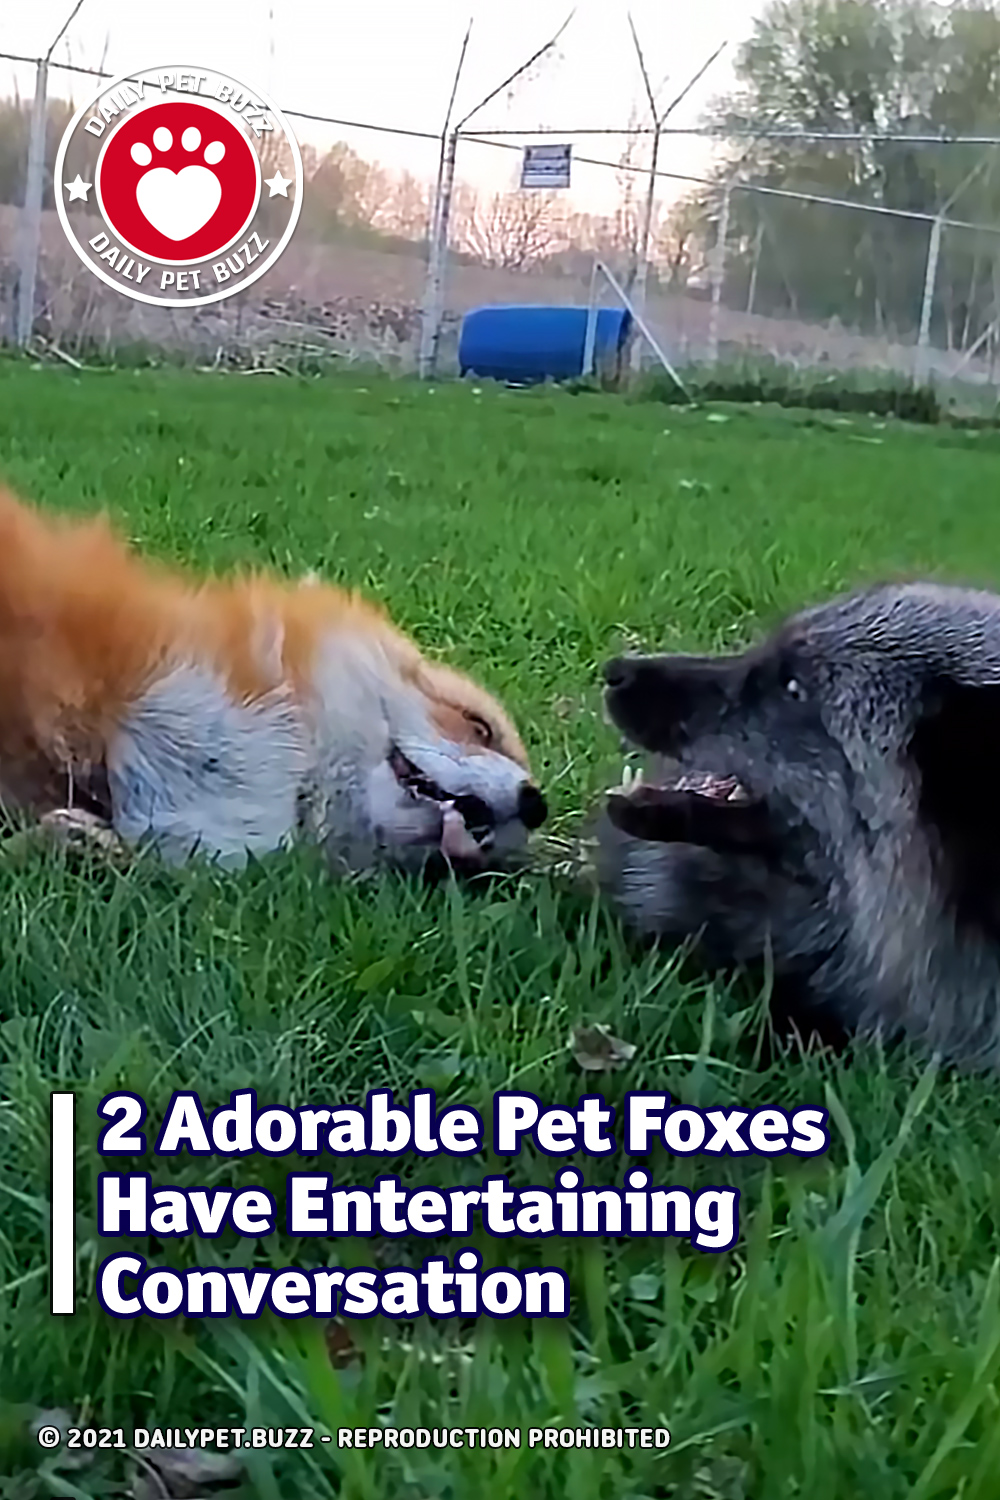 2 Adorable Pet Foxes Have Entertaining Conversation